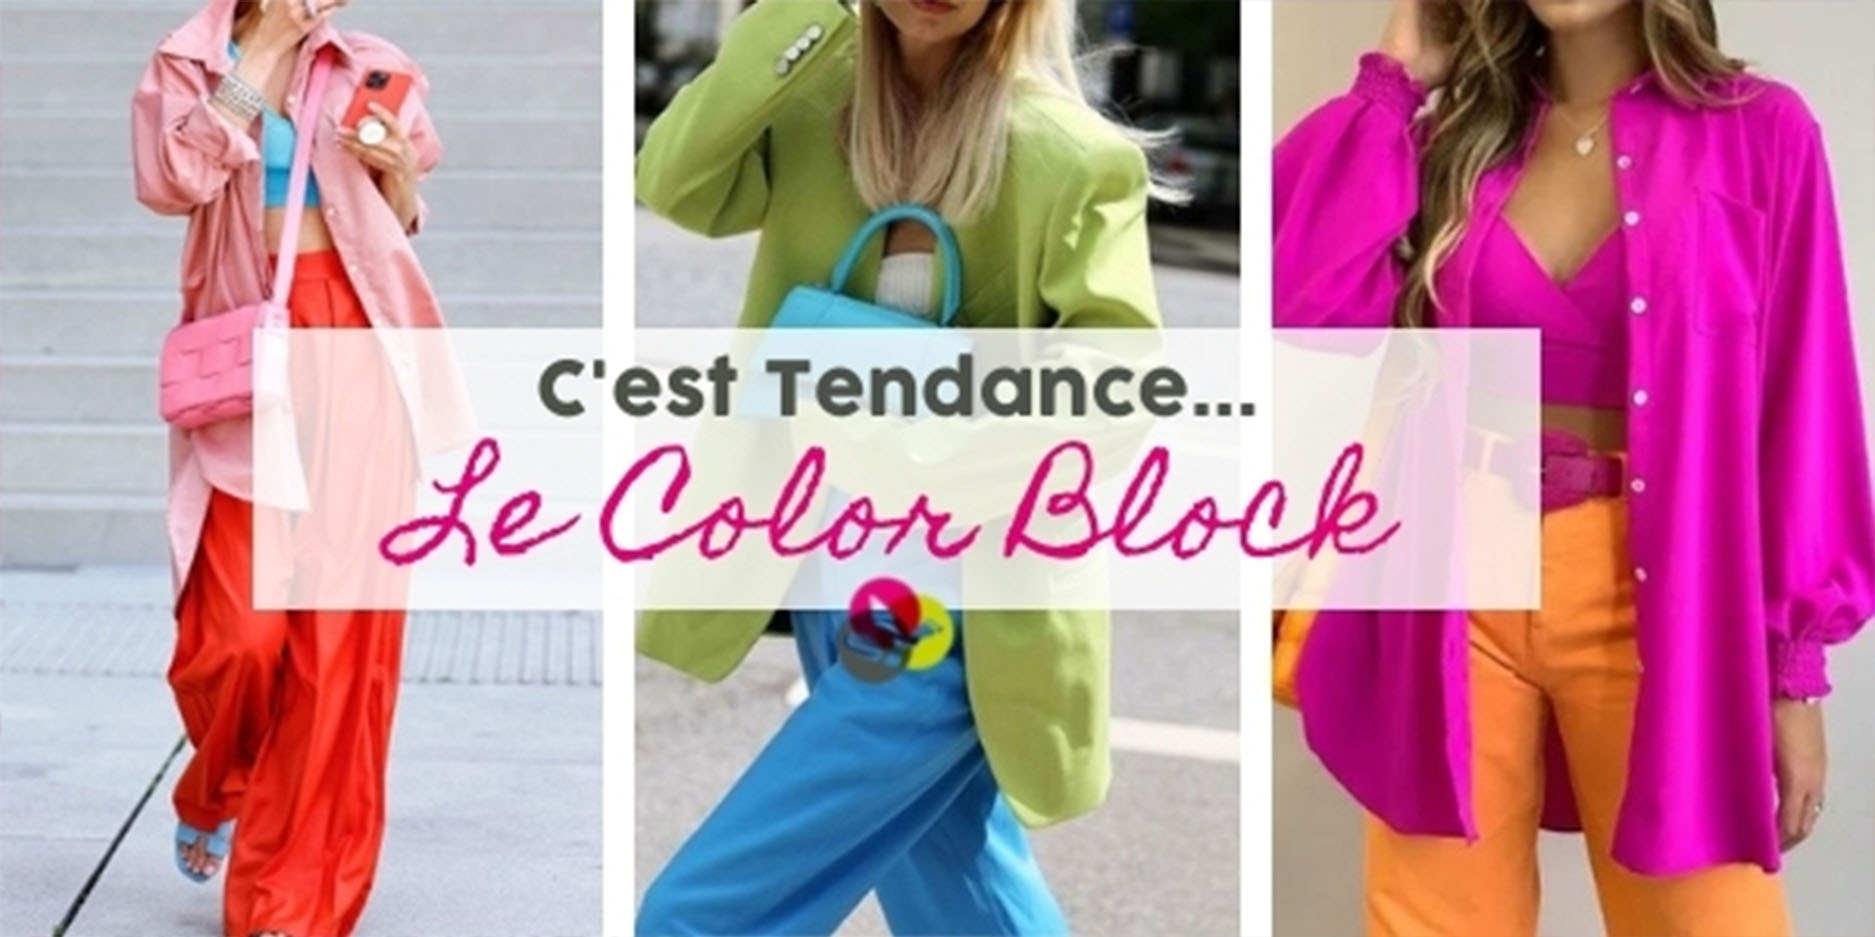 C’est Tendance: Le Color Block